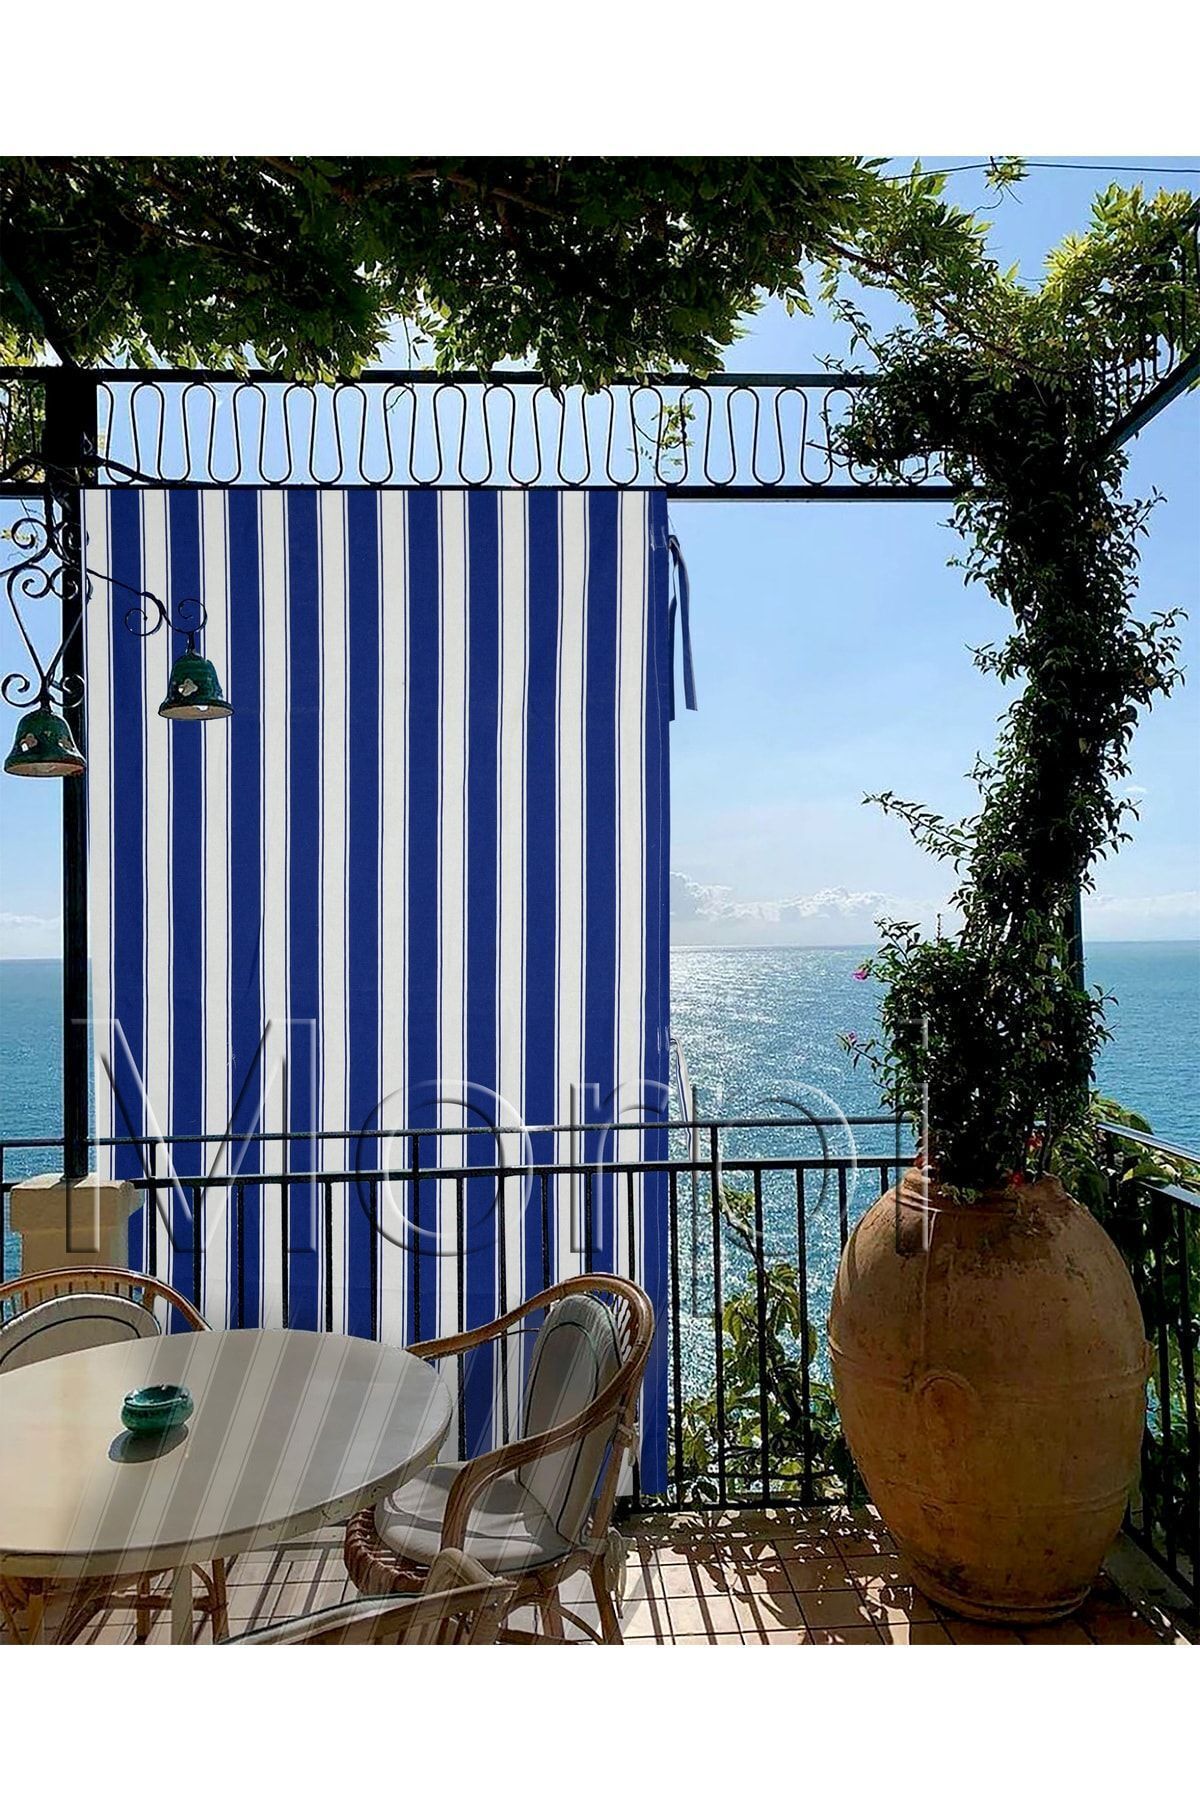 morpi Her Ölçüde Enxboy Seçenekli Bağcıklı Balkon Perdesi-balkon Brandası Mavi-Beyaz